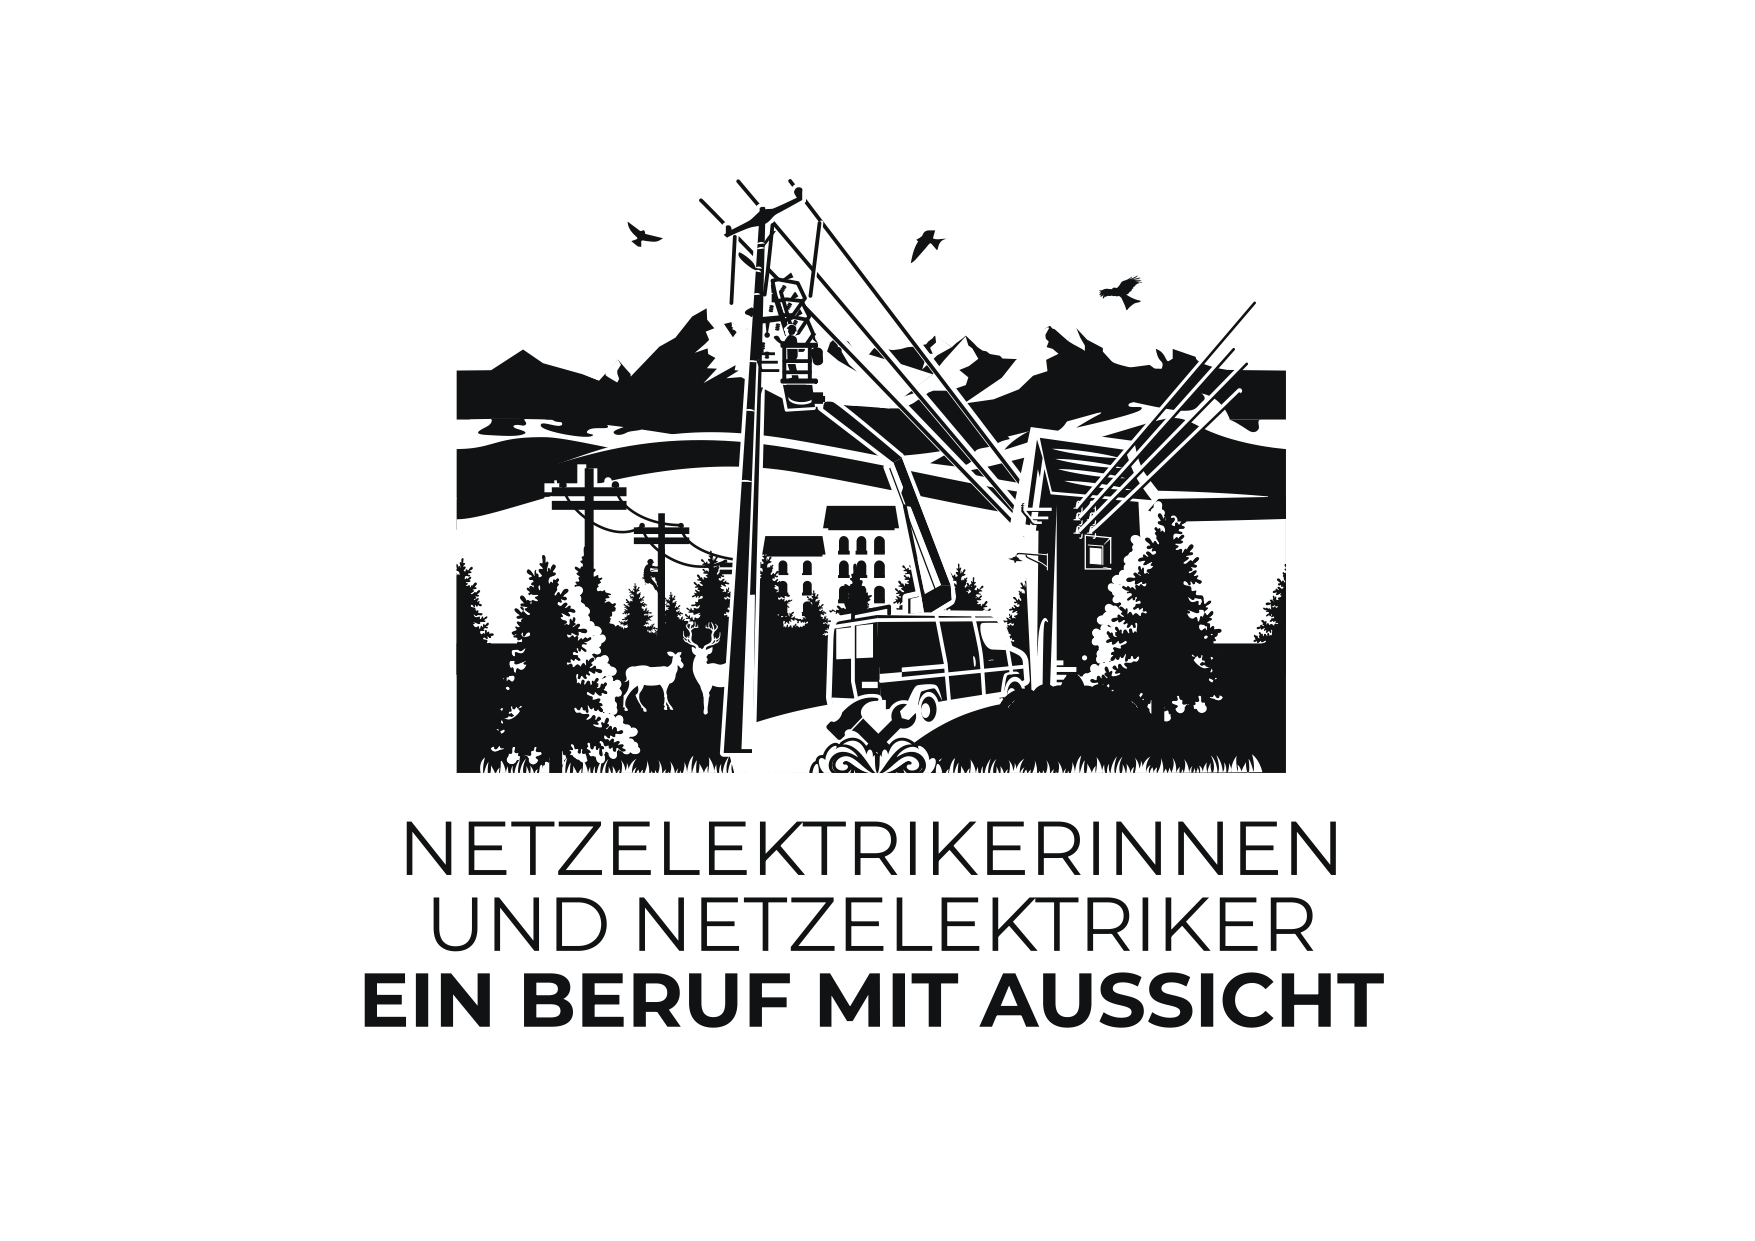 Saphir Group an der Basler Berufs- und Weiterbildungsmesse vom 20.-22.10.2022